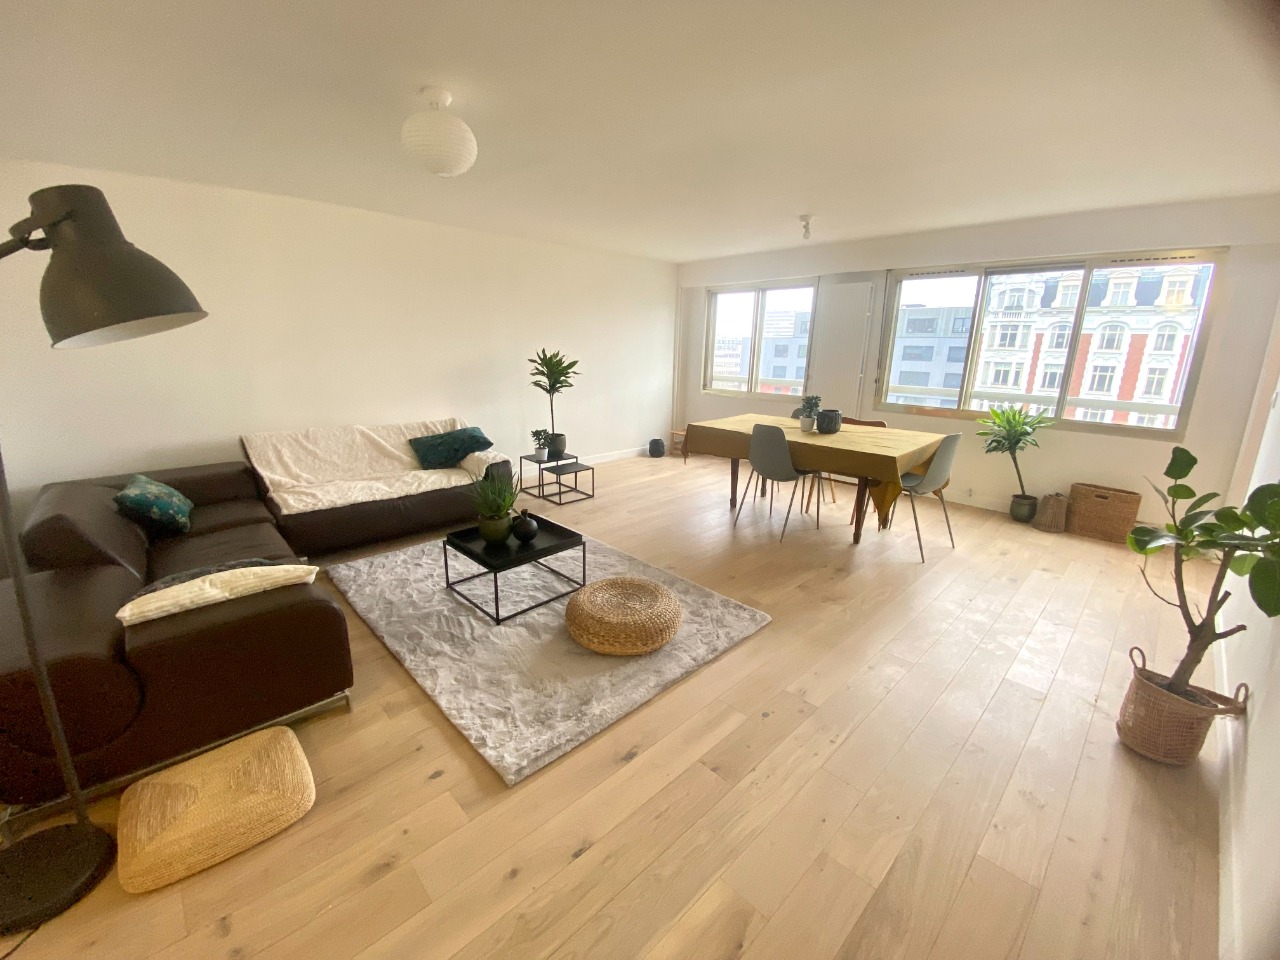 Appartement entierement renove 3 chambres et parkings Photo 1 - Paris Lille Immobilier